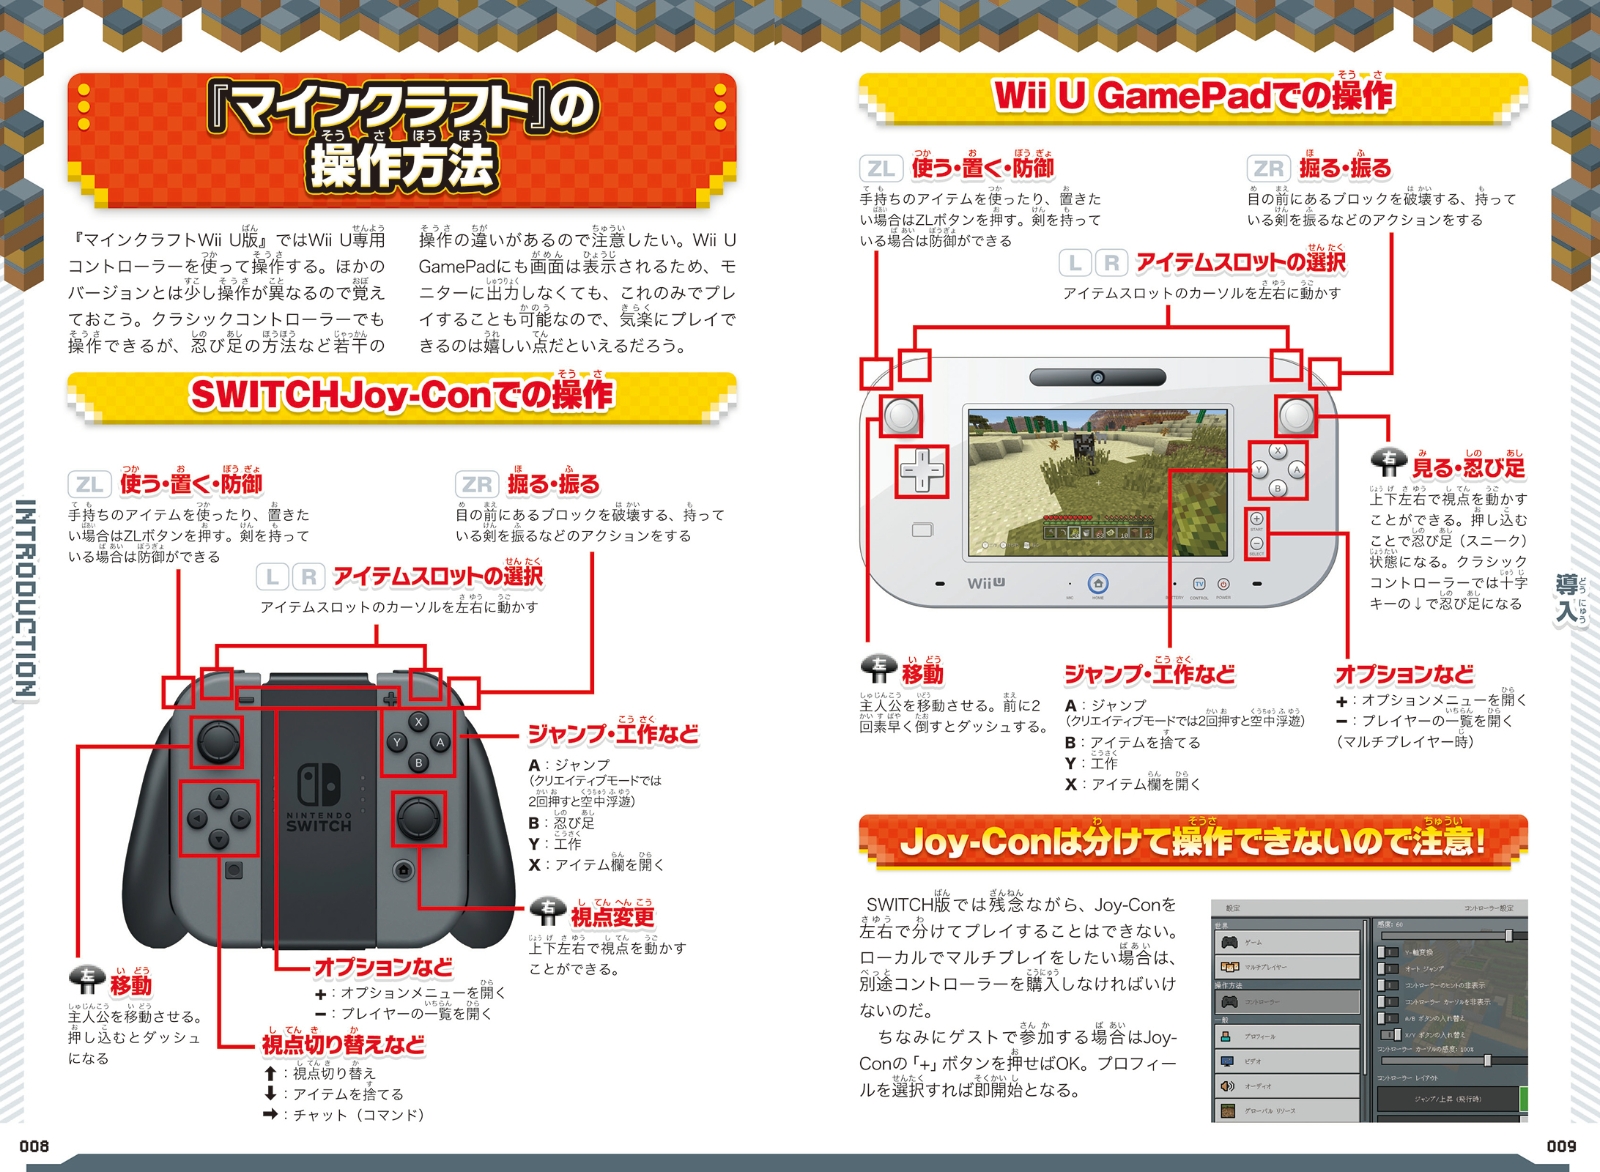 楽天ブックス マインクラフト まるわかりガイド For Switch 2020 Wii